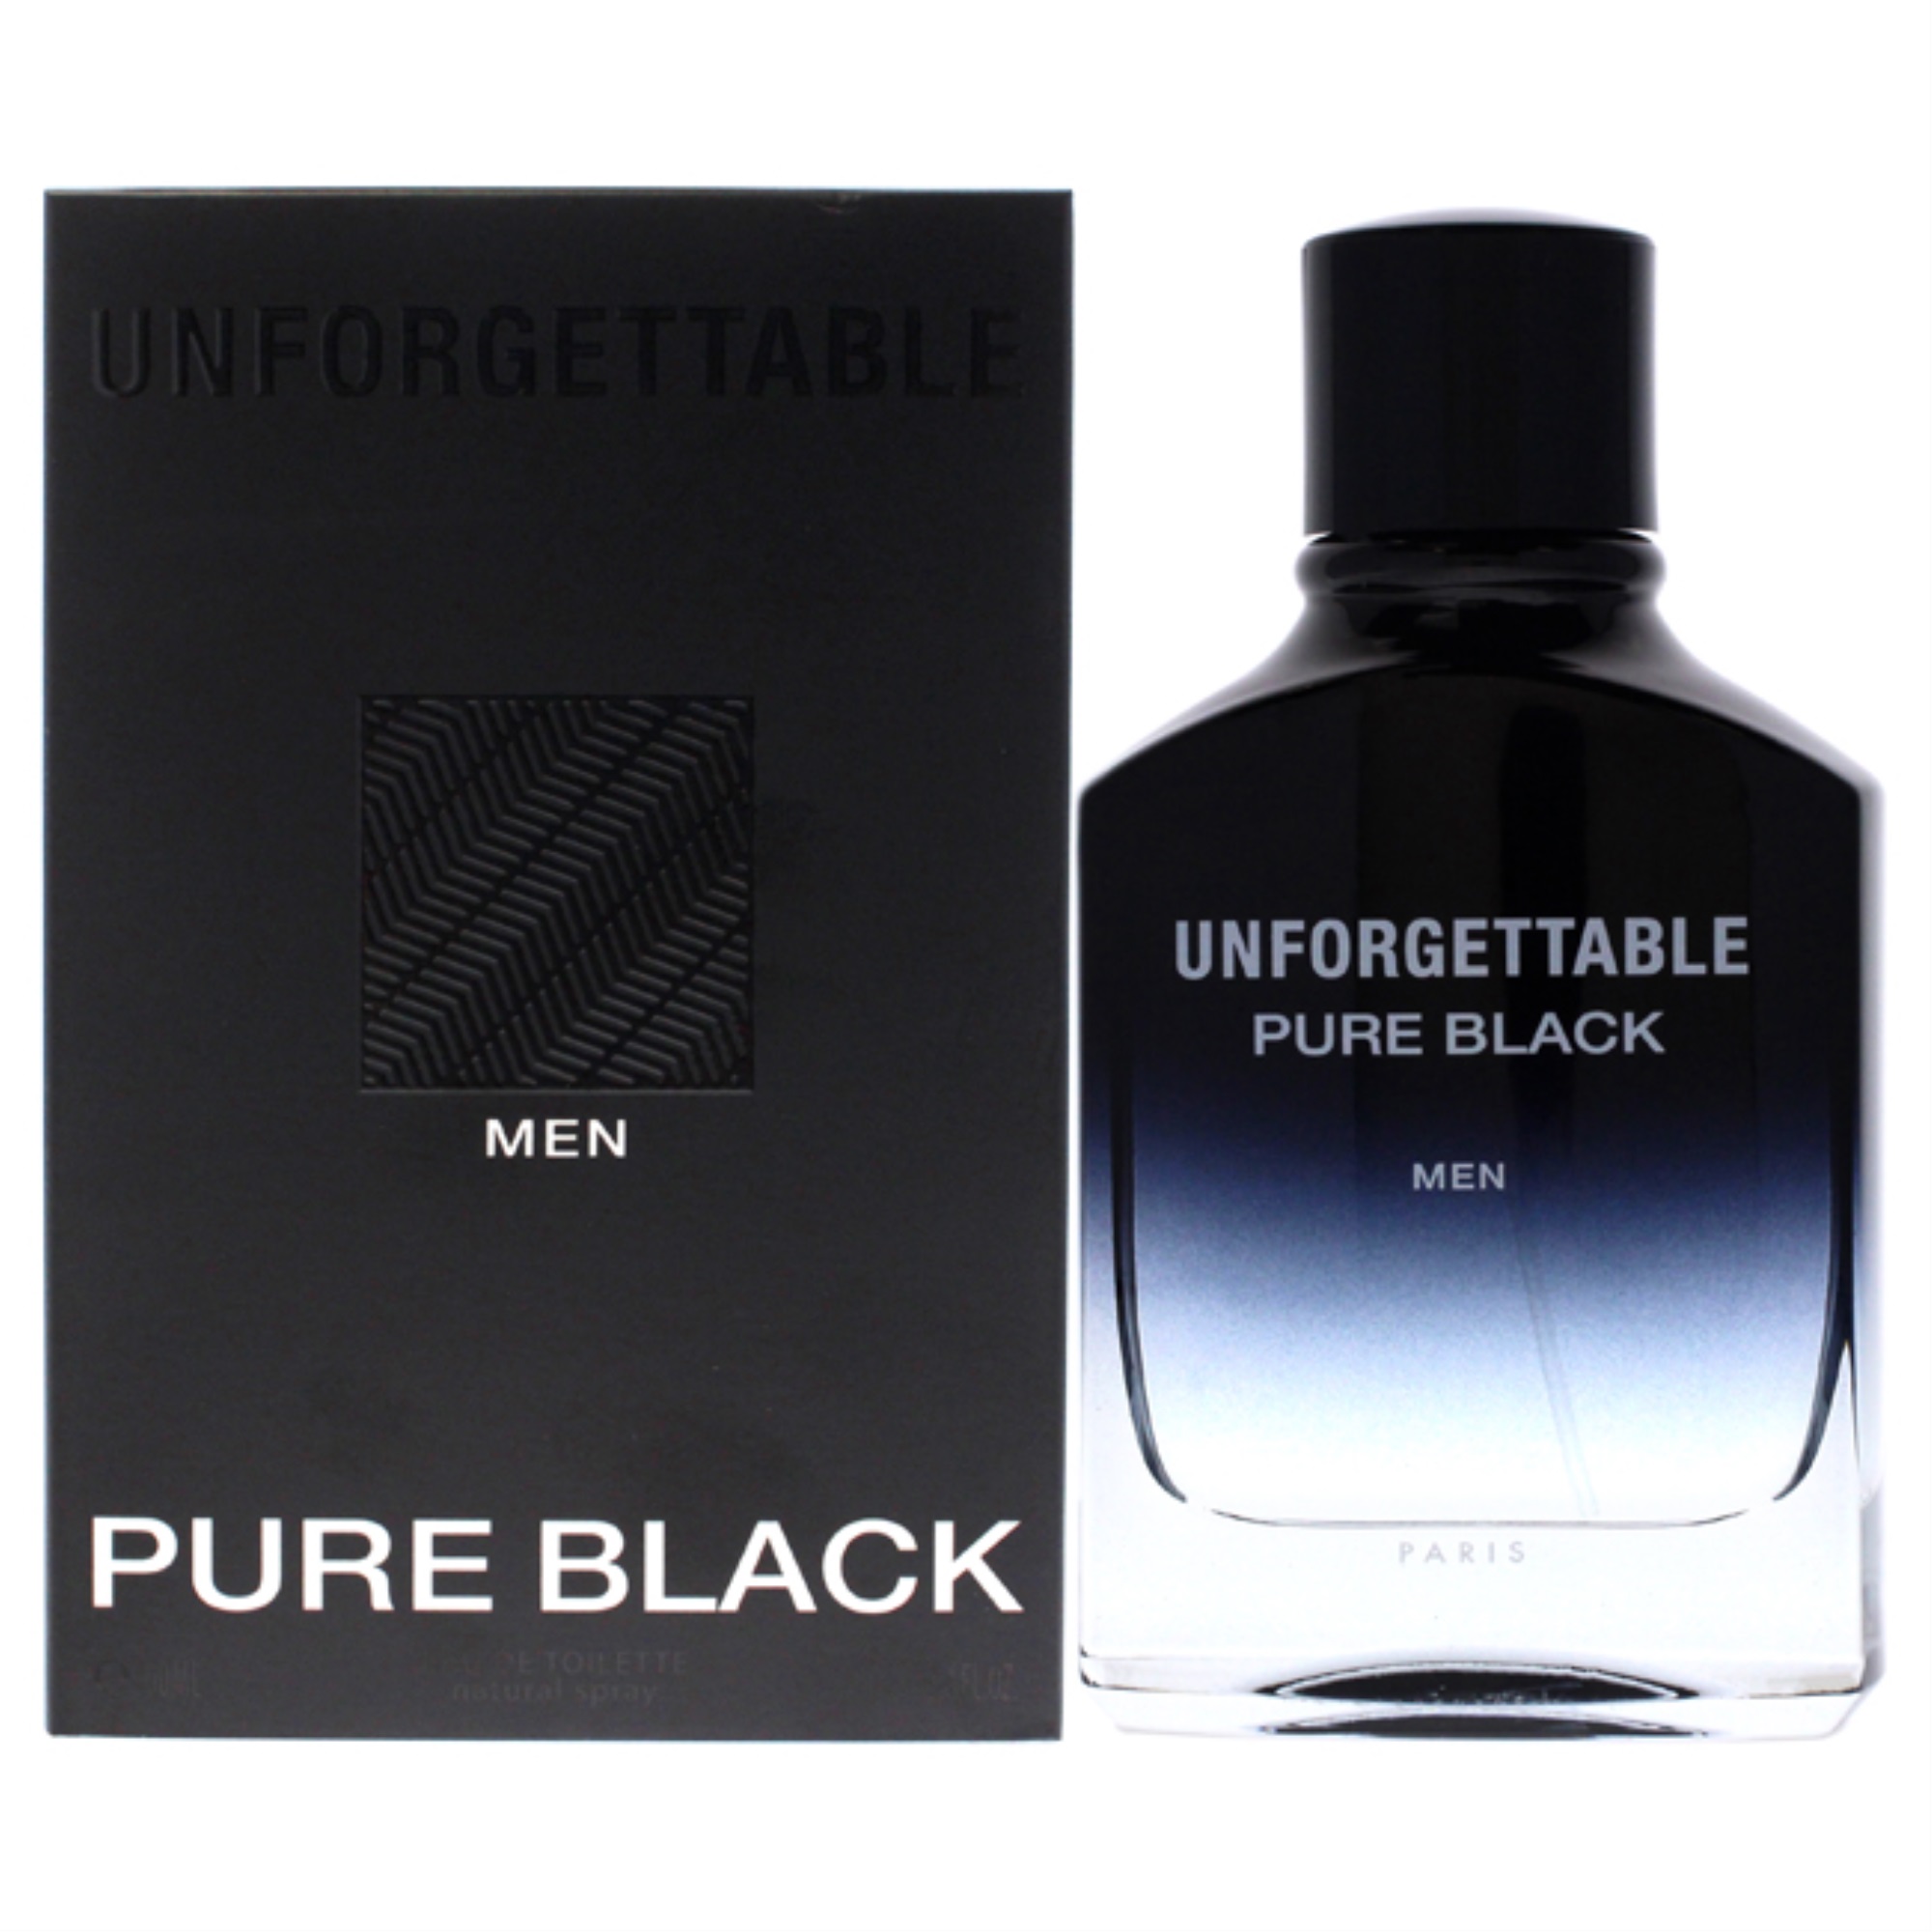 GLENN PERRI amunfpb34s 3.4 oz Unforgettable Pure Black Eau De Toilette Spray for Men